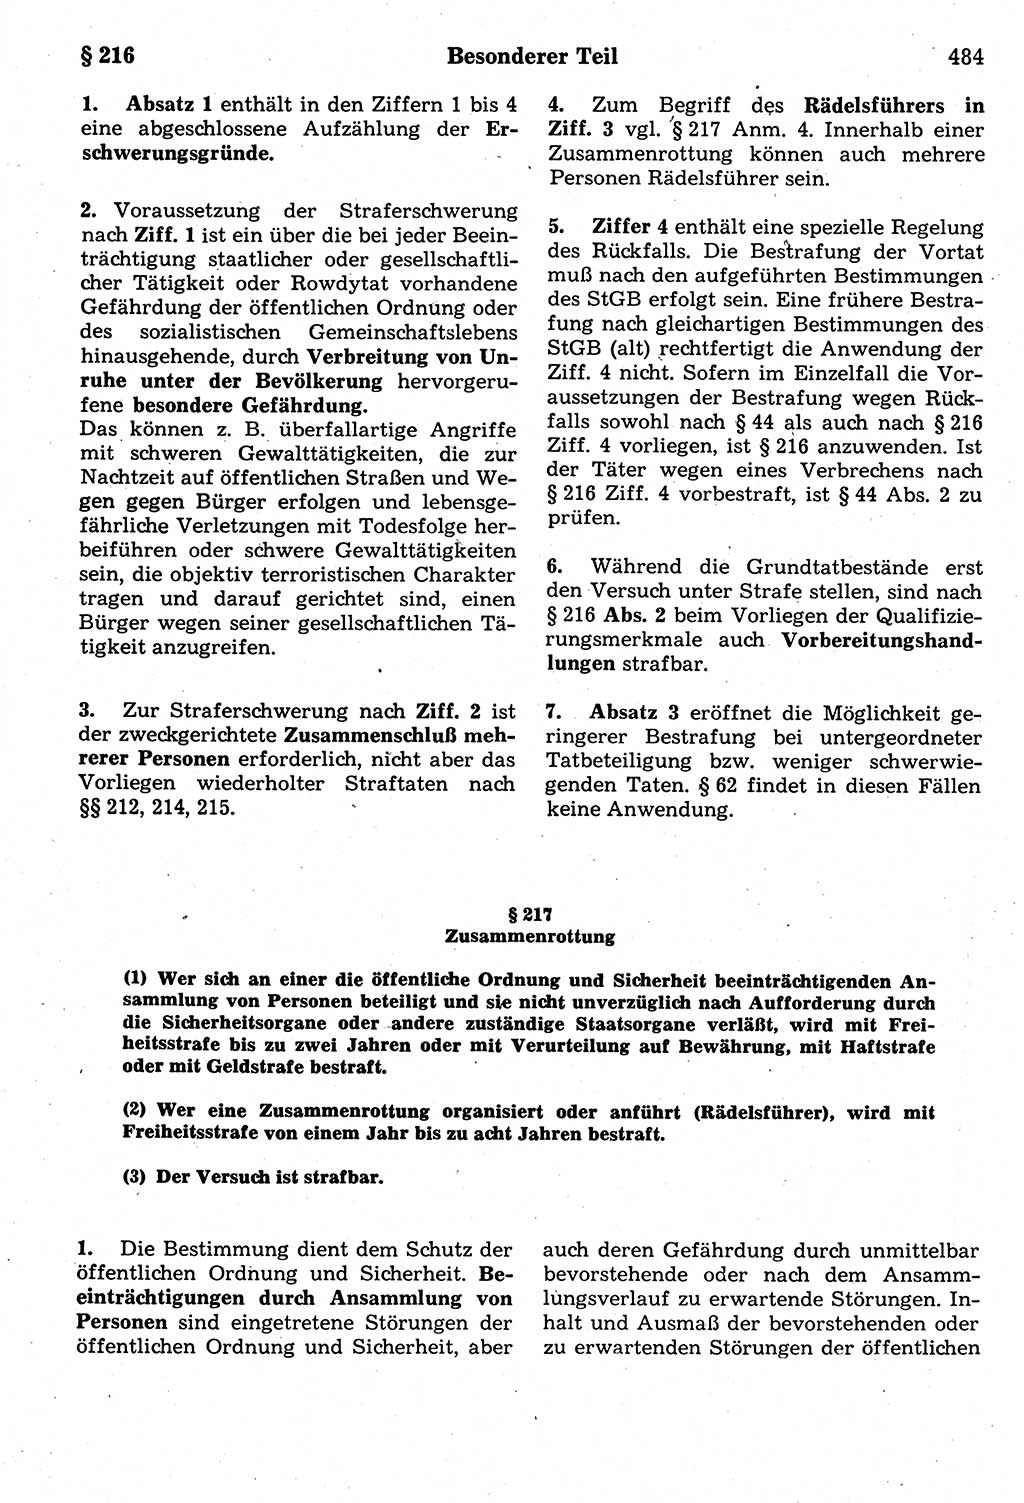 Strafrecht der Deutschen Demokratischen Republik (DDR), Kommentar zum Strafgesetzbuch (StGB) 1987, Seite 484 (Strafr. DDR Komm. StGB 1987, S. 484)